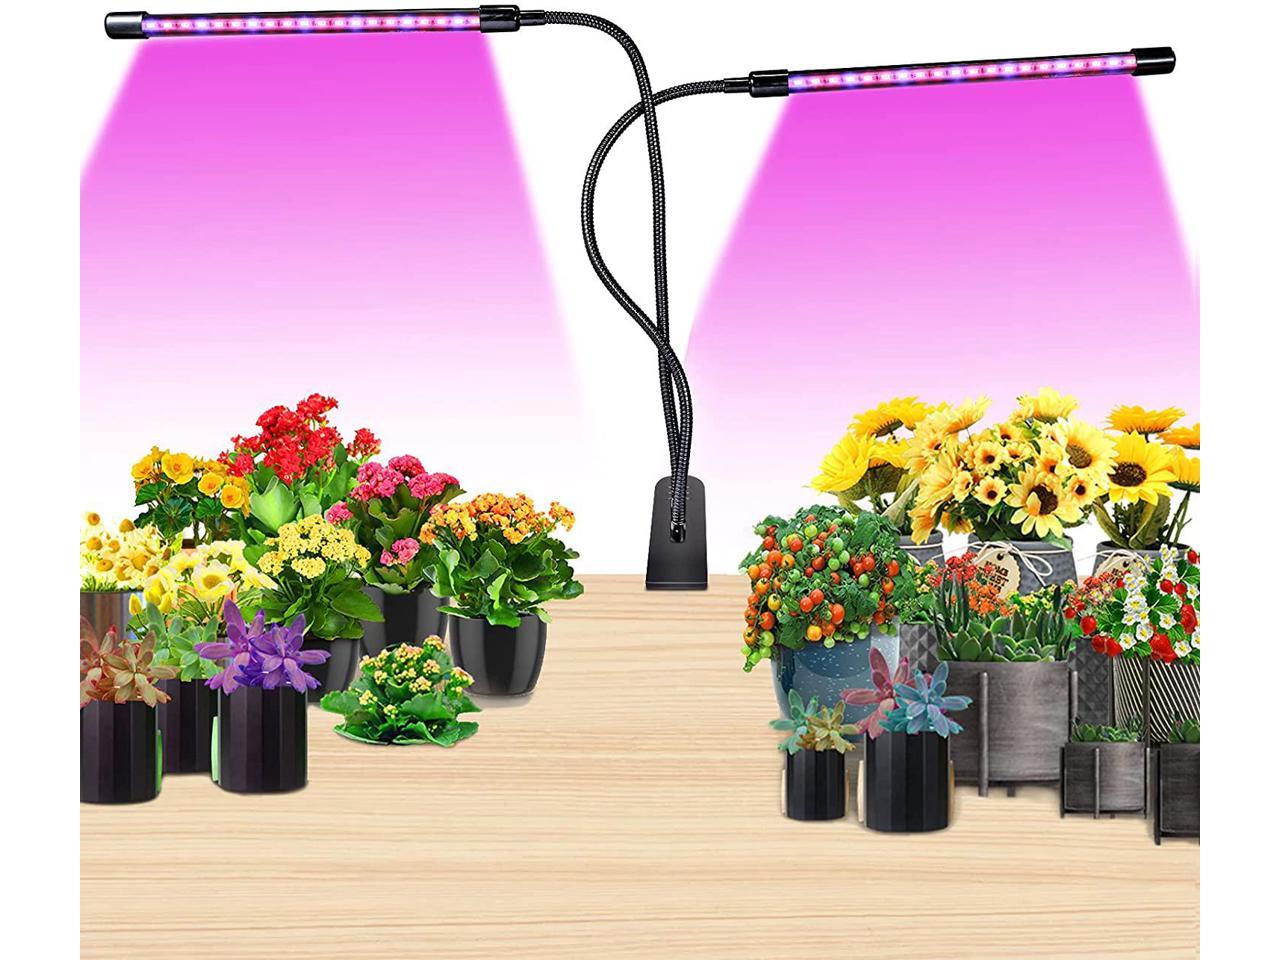 Full  LED Grow Light Veg Bloom Plants Dual Head for Garden USB Port 